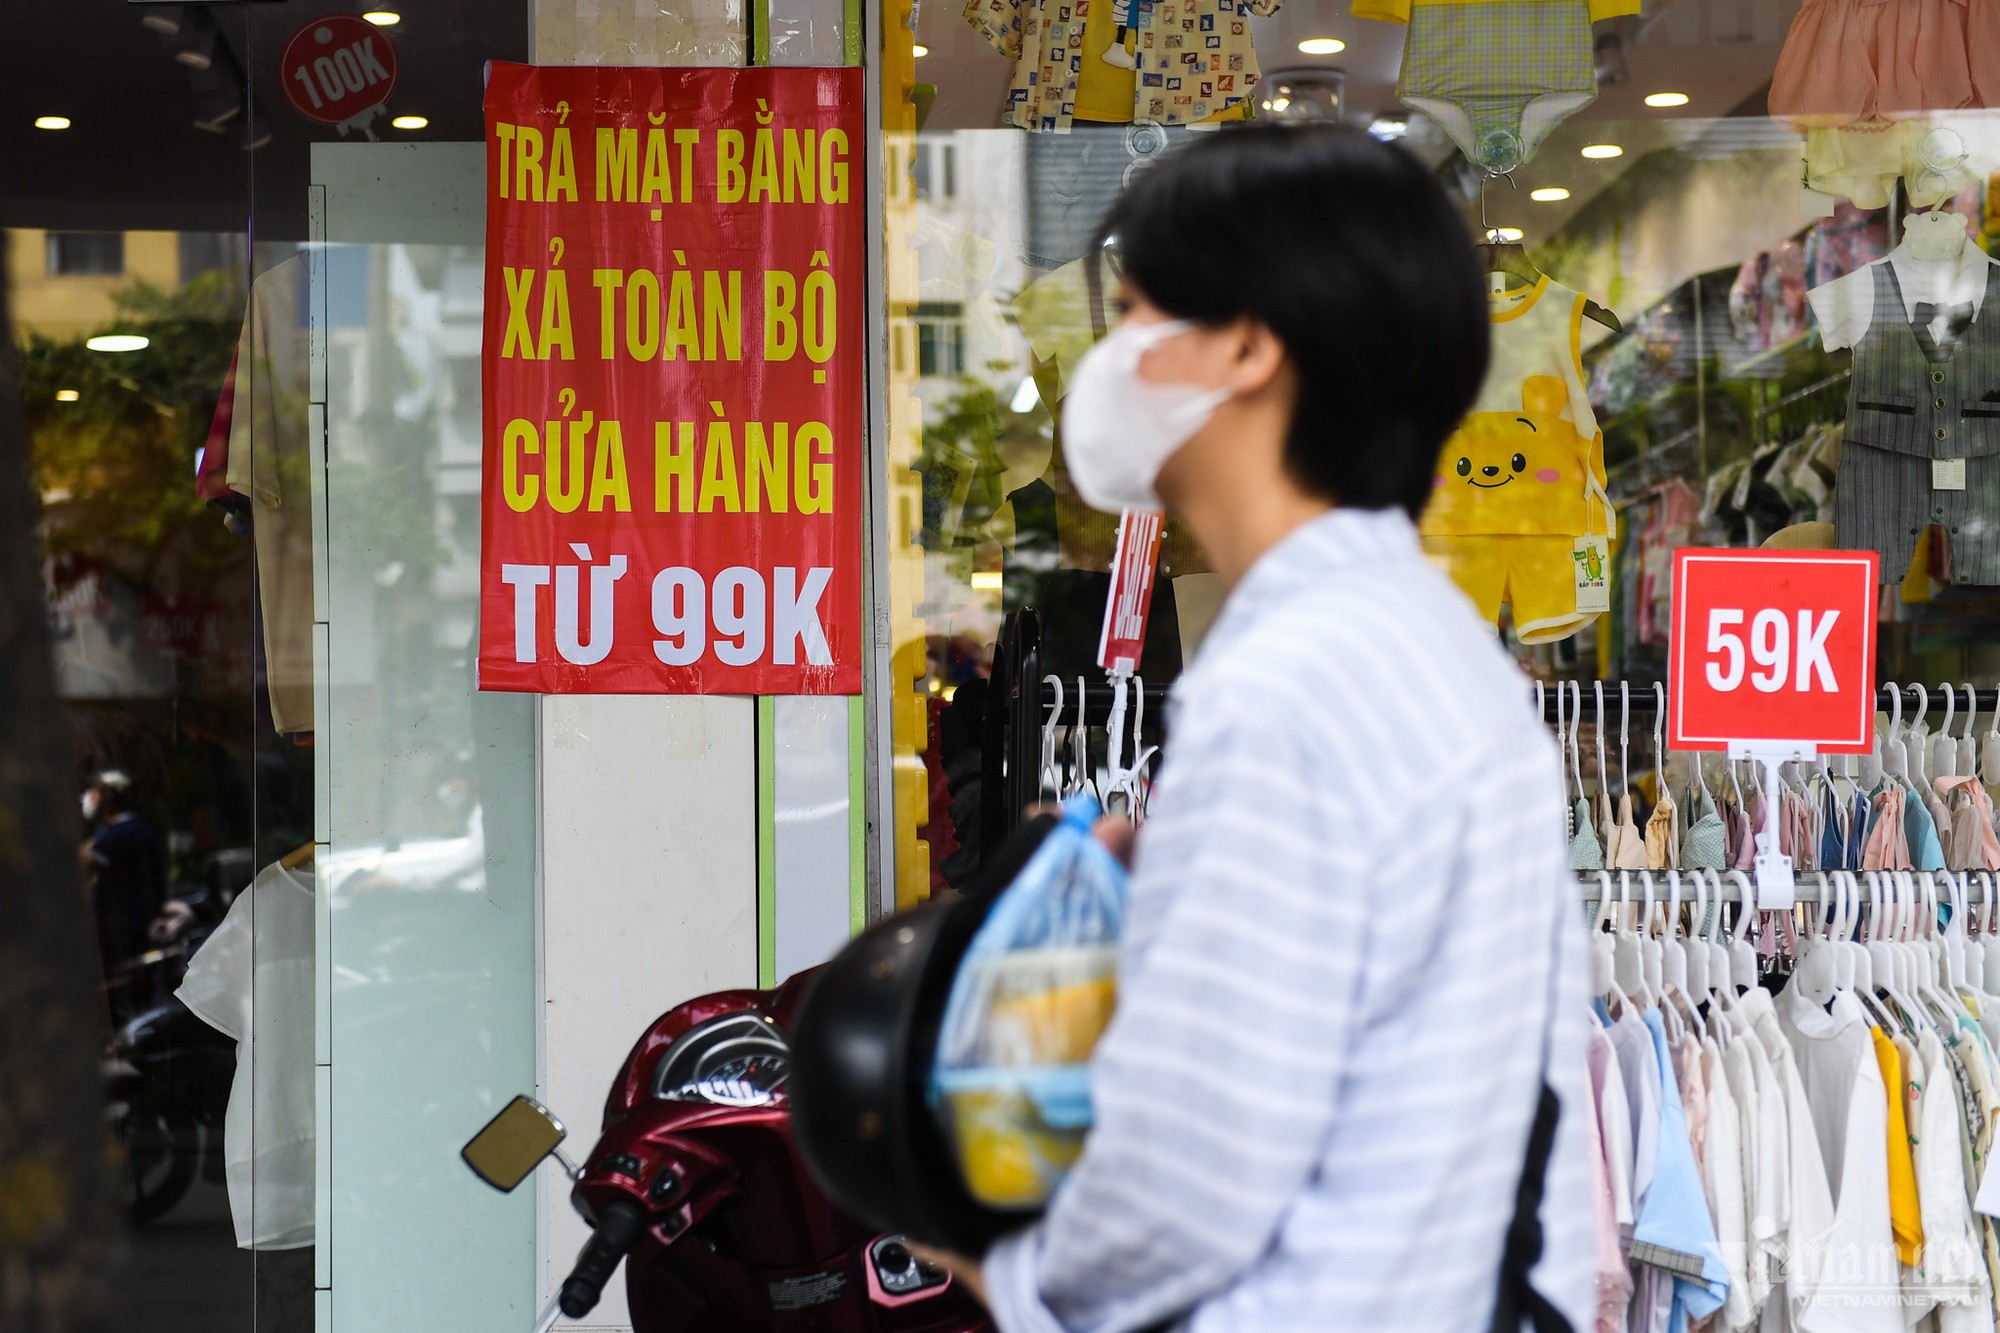 Các con đường thời trang ở Hà Nội ế ẩm, hàng loạt chủ tiệm trả mặt bằng - Ảnh 5.